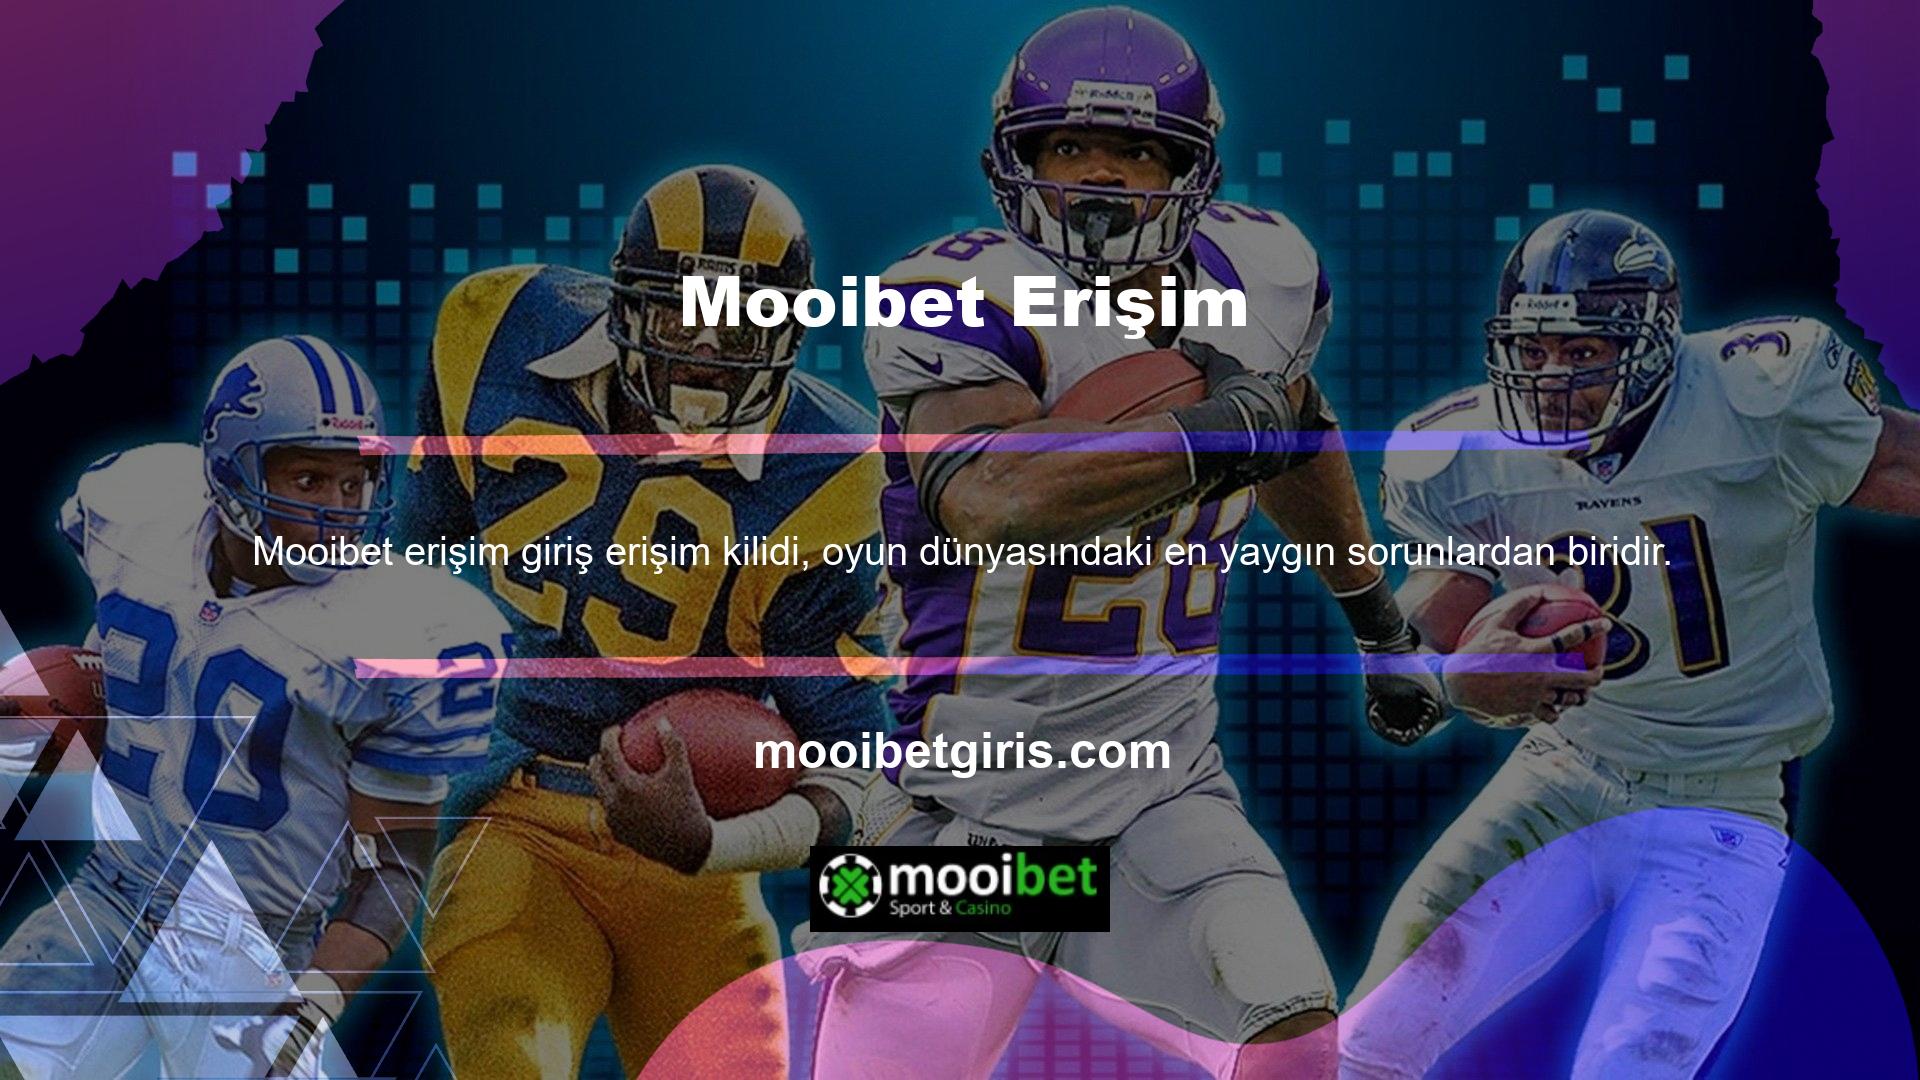 Askıya alındığında, Mooibet web sitesine yeni adresten kolayca erişilebilir